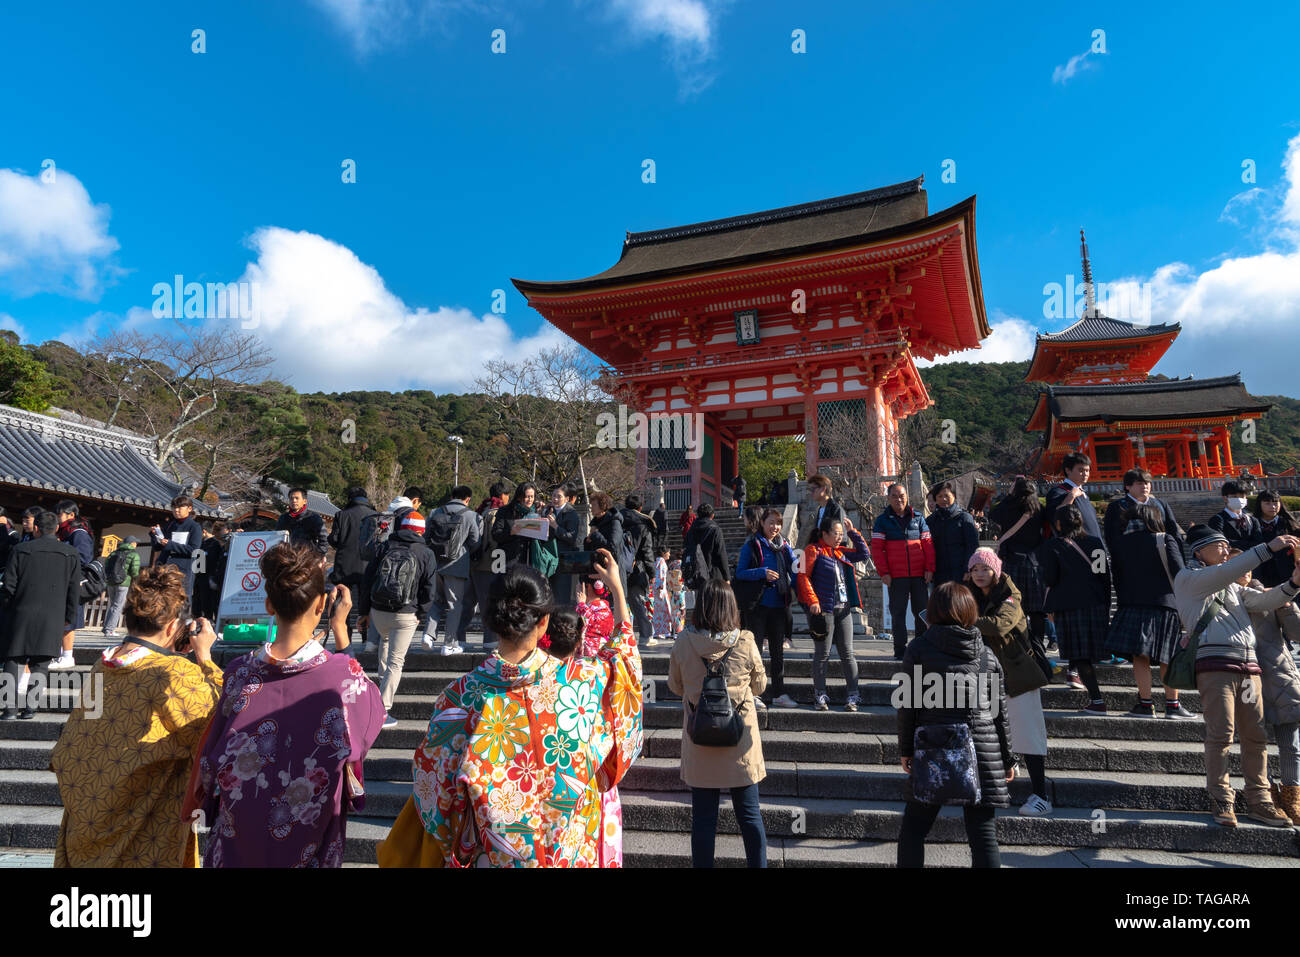 Nio-mon gate o gate di Nio, l'entrata principale di Kiyomizu-dera tempio di Kyoto, Giappone - 23 Luglio 2018 Foto Stock